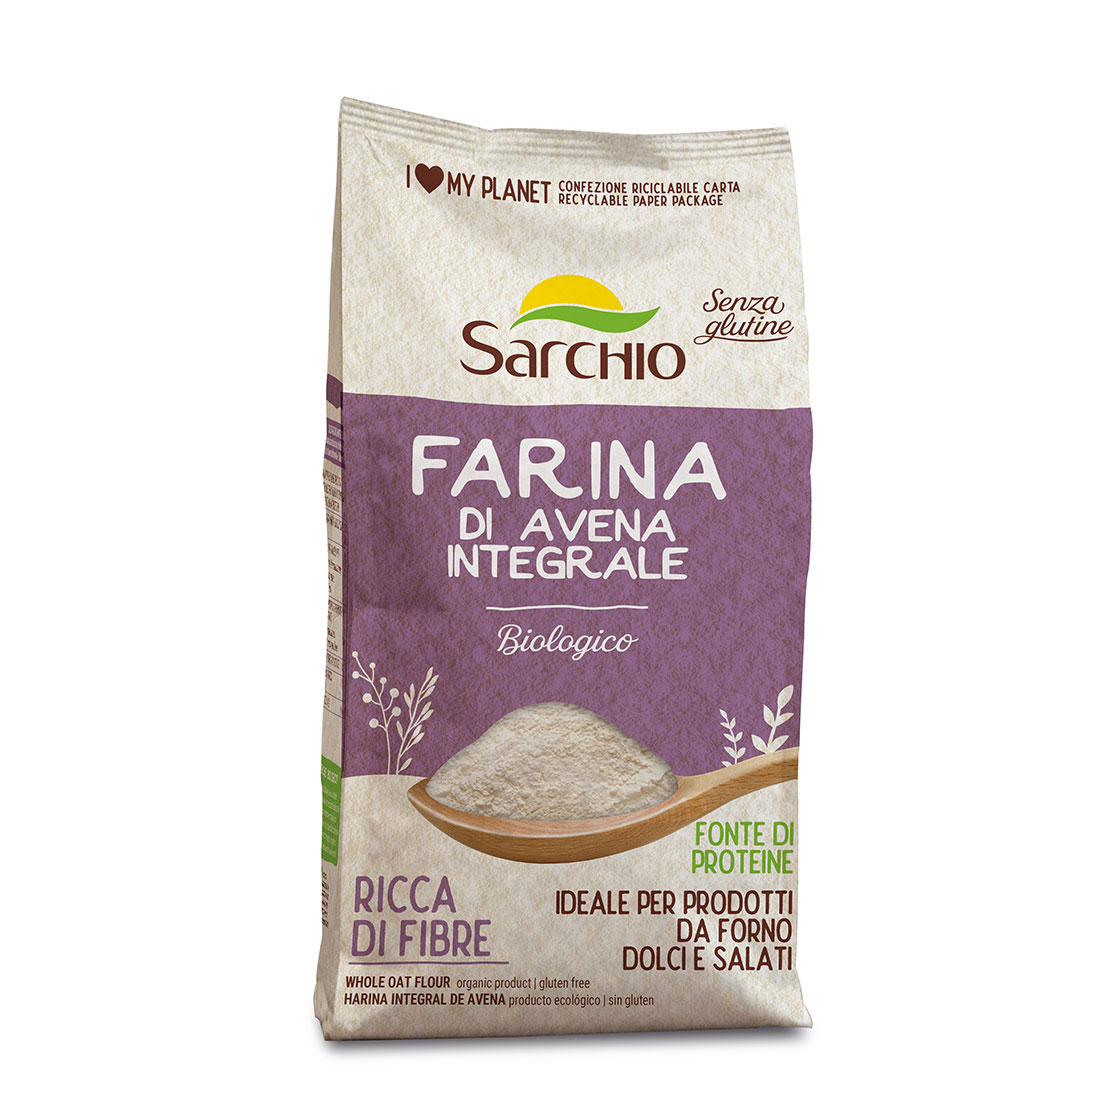 Whole oat flour gluten free